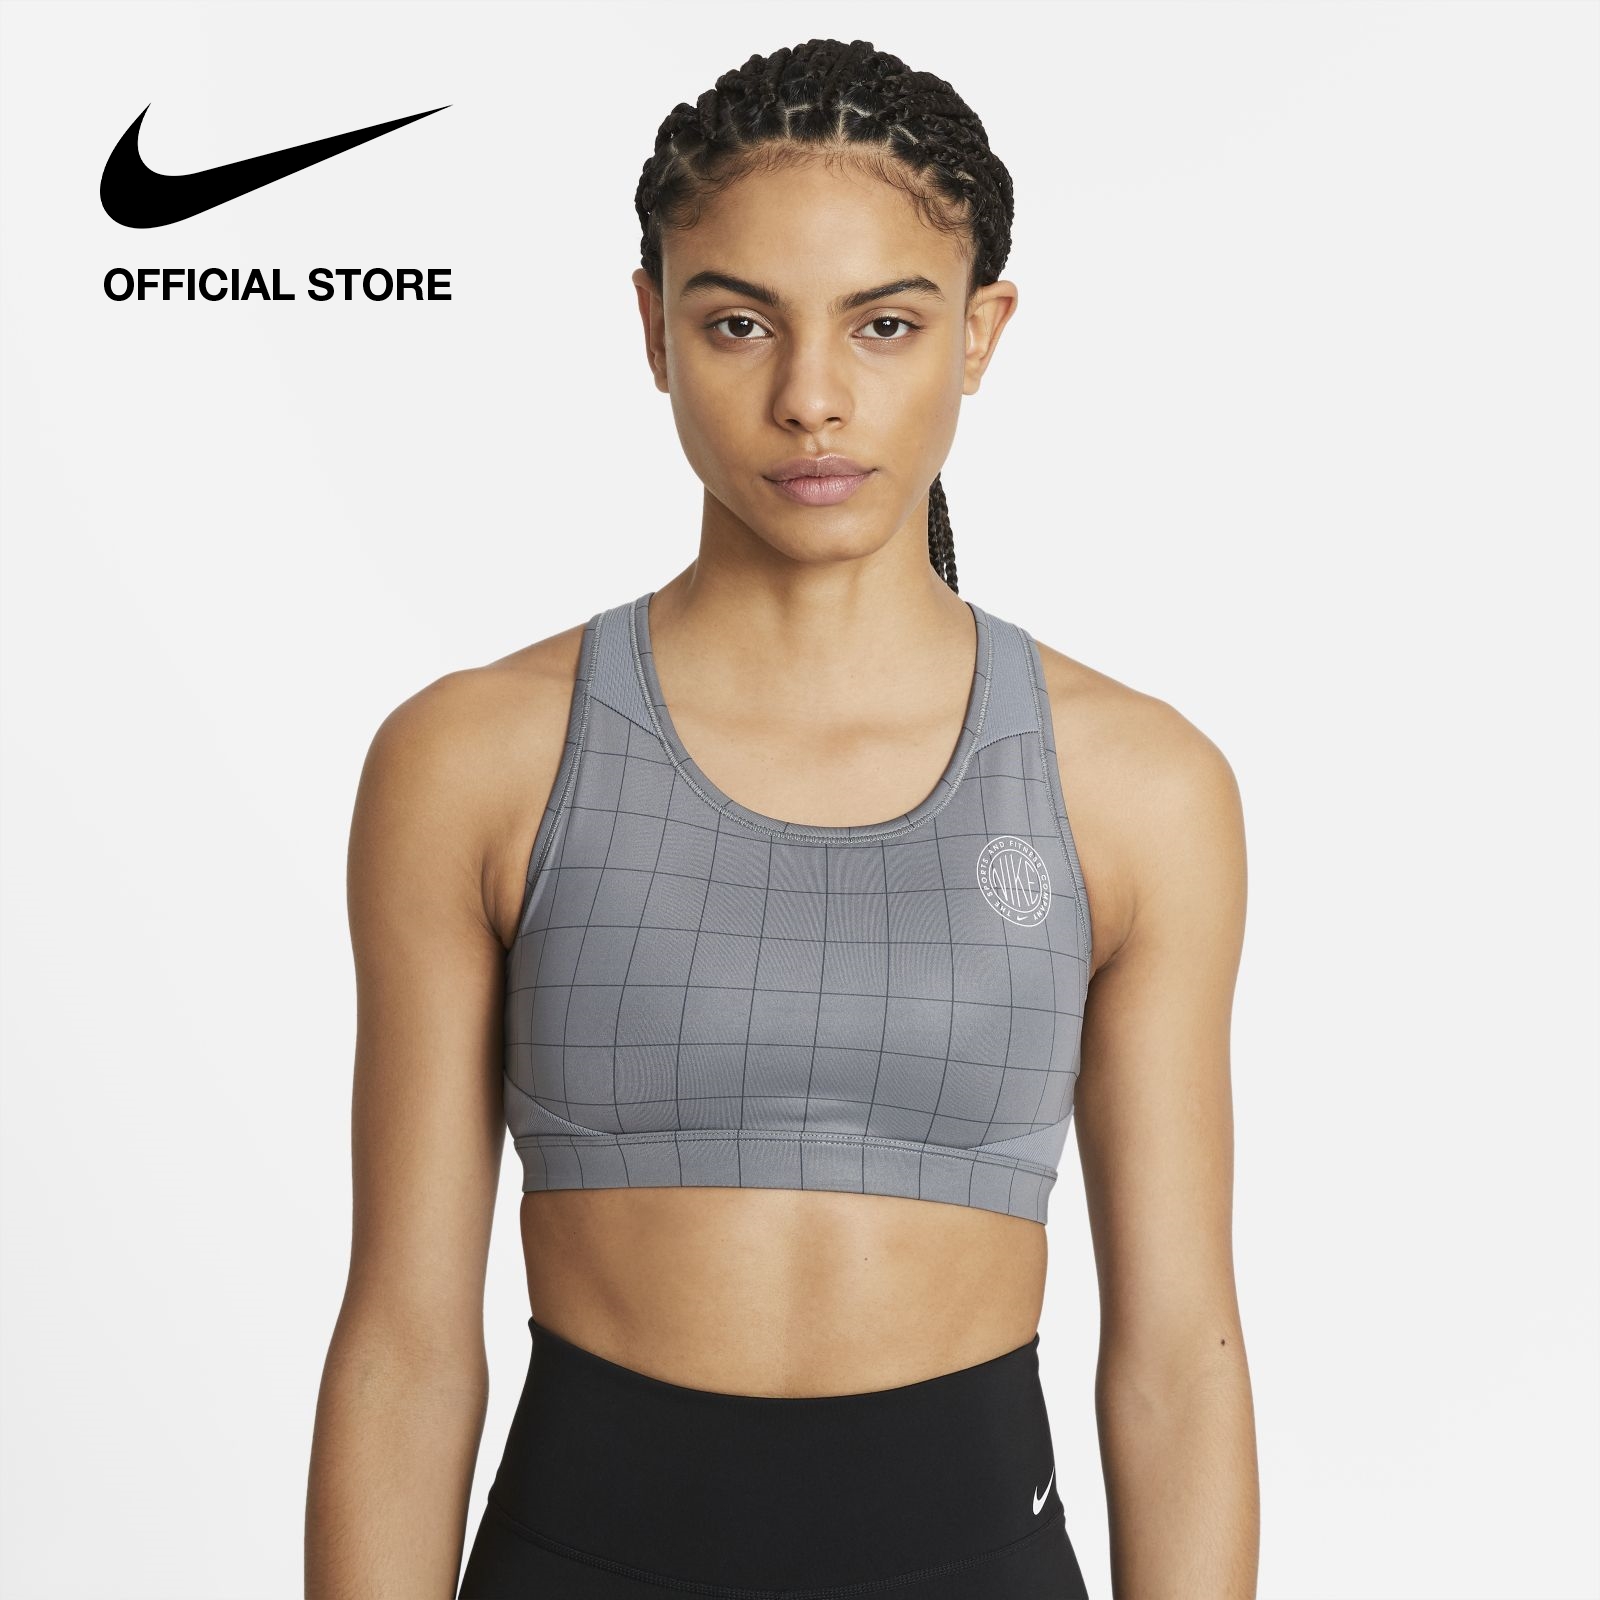 Nike Women's Swoosh Femme AOP Lip Medium-Support Sports Bra - Smoke Grey ไนกี้ สปอร์ตบราผู้หญิงซัพพอร์ตระดับกลาง สวูช เฟมเม่ เอโอพี ลิป - สีเทา